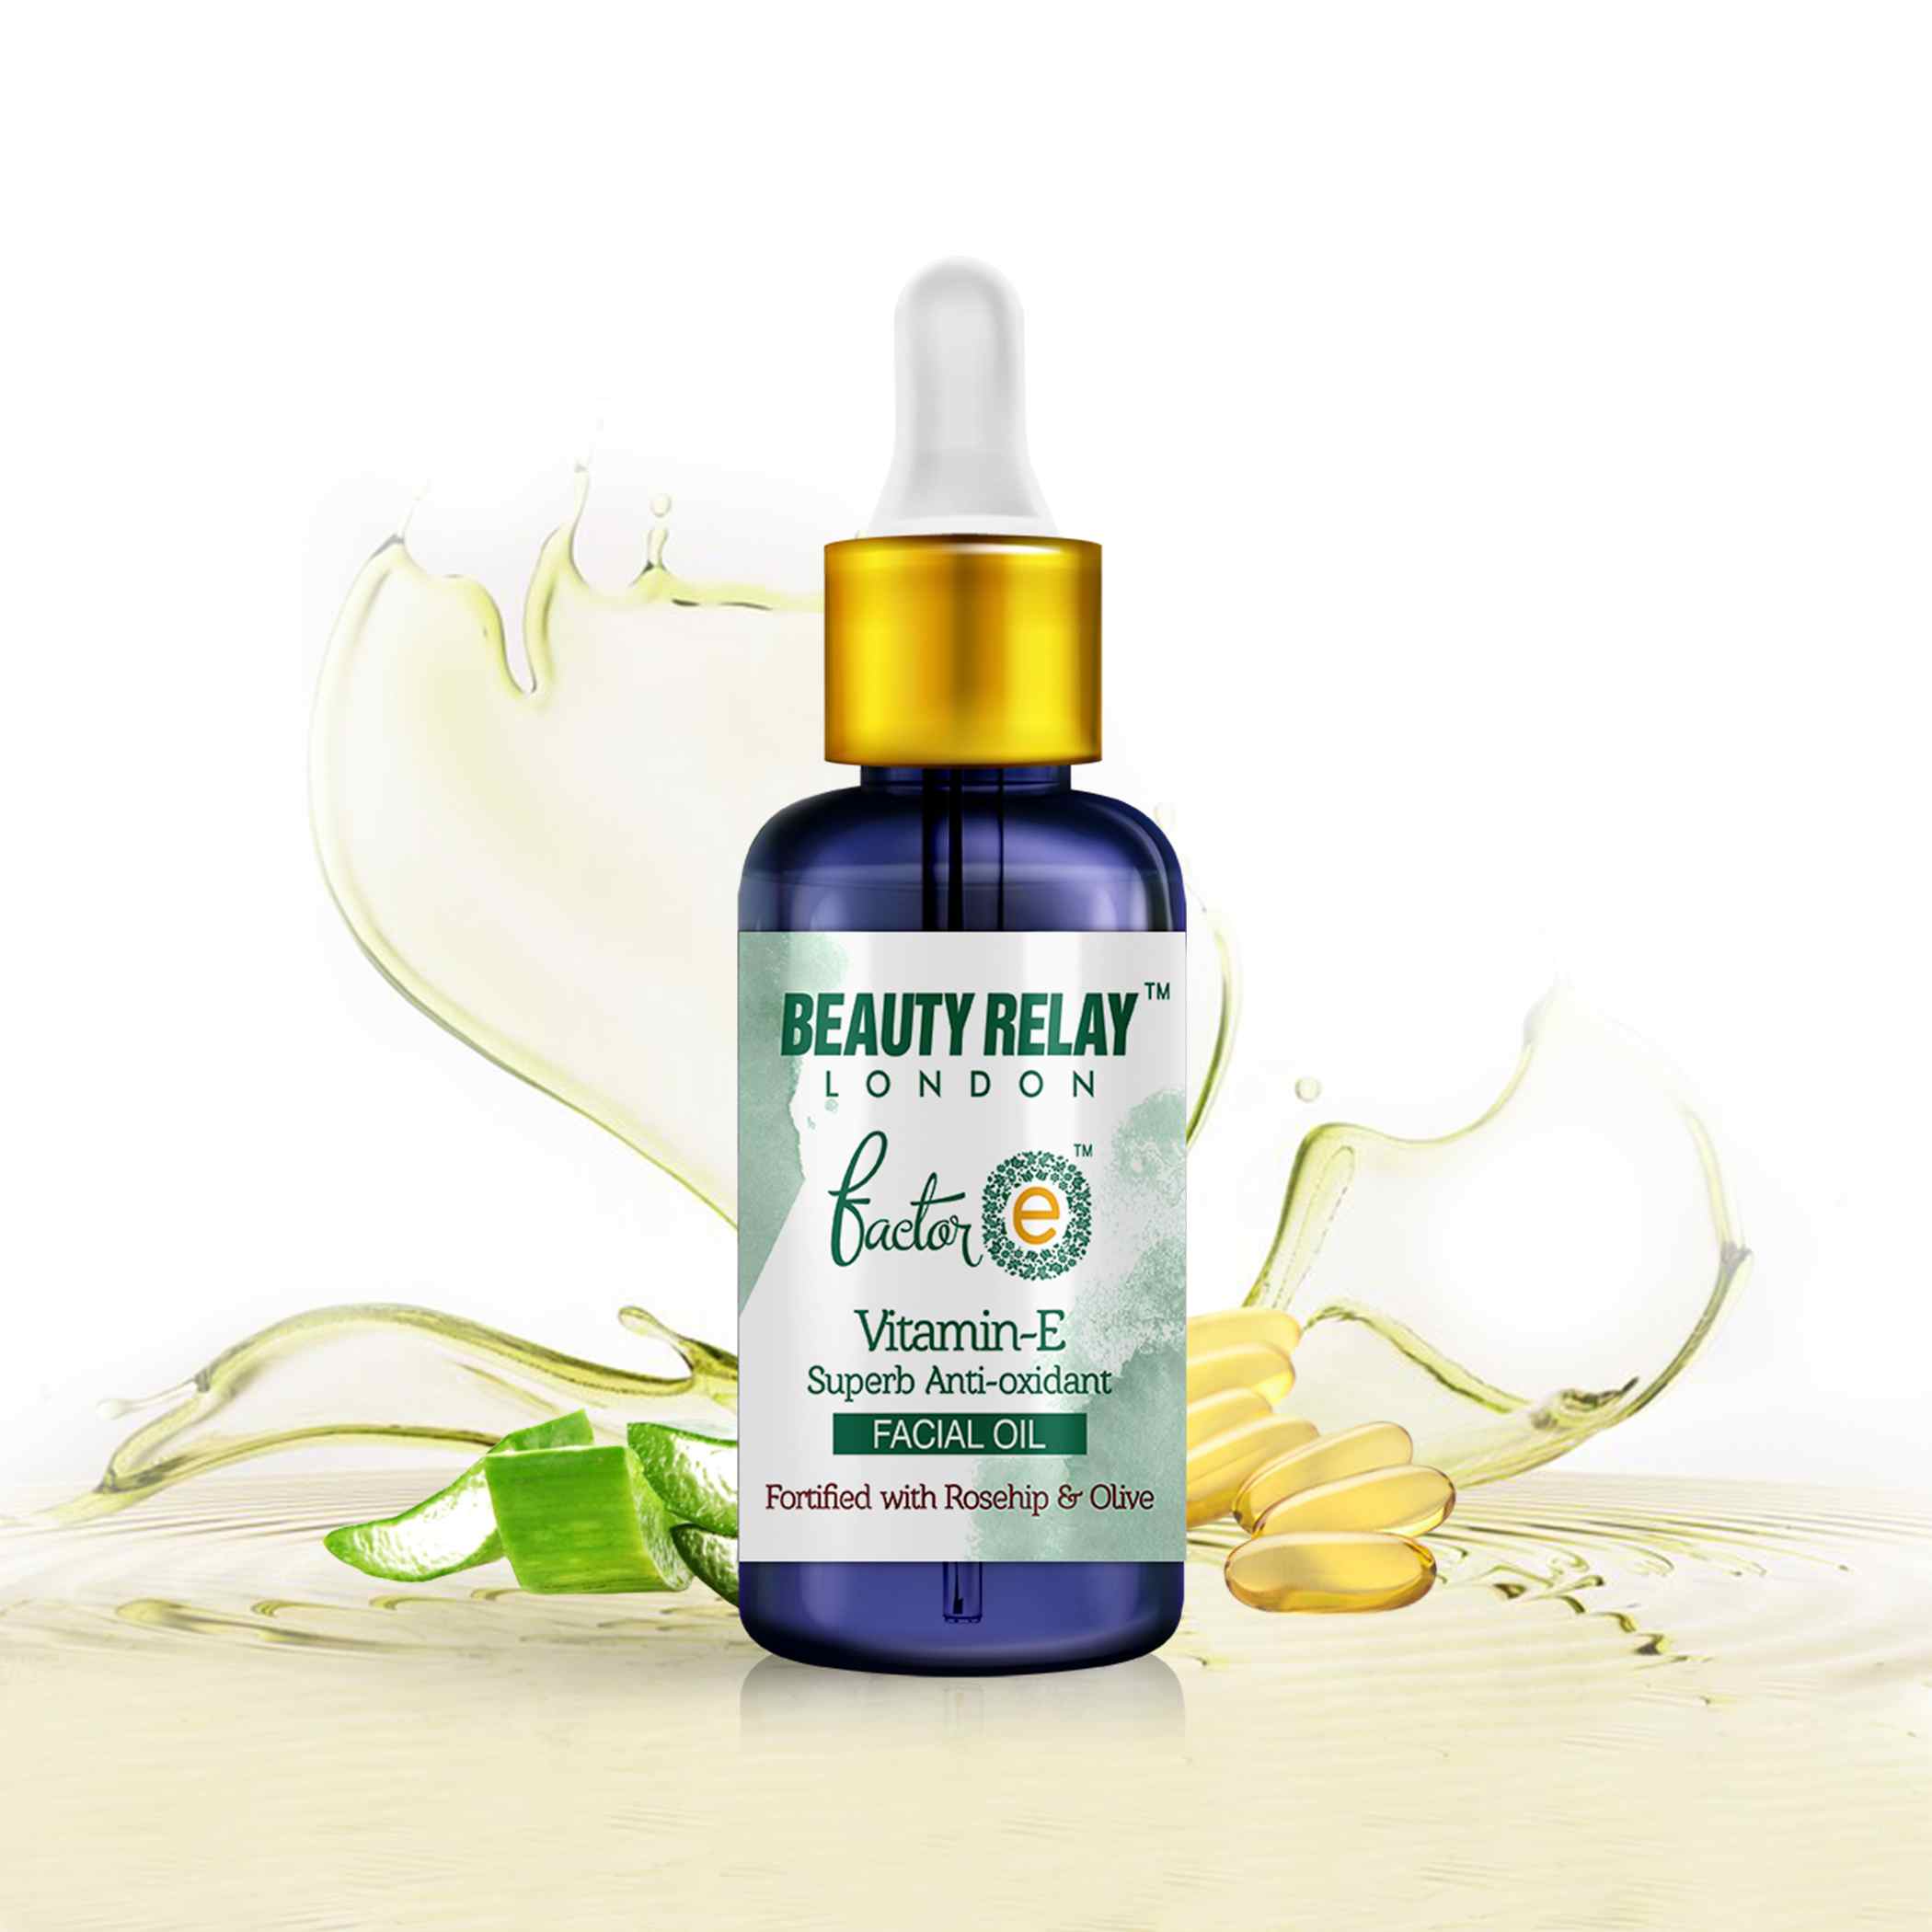 Vitamin-E Facial Oil with Super Anti-Oxidants